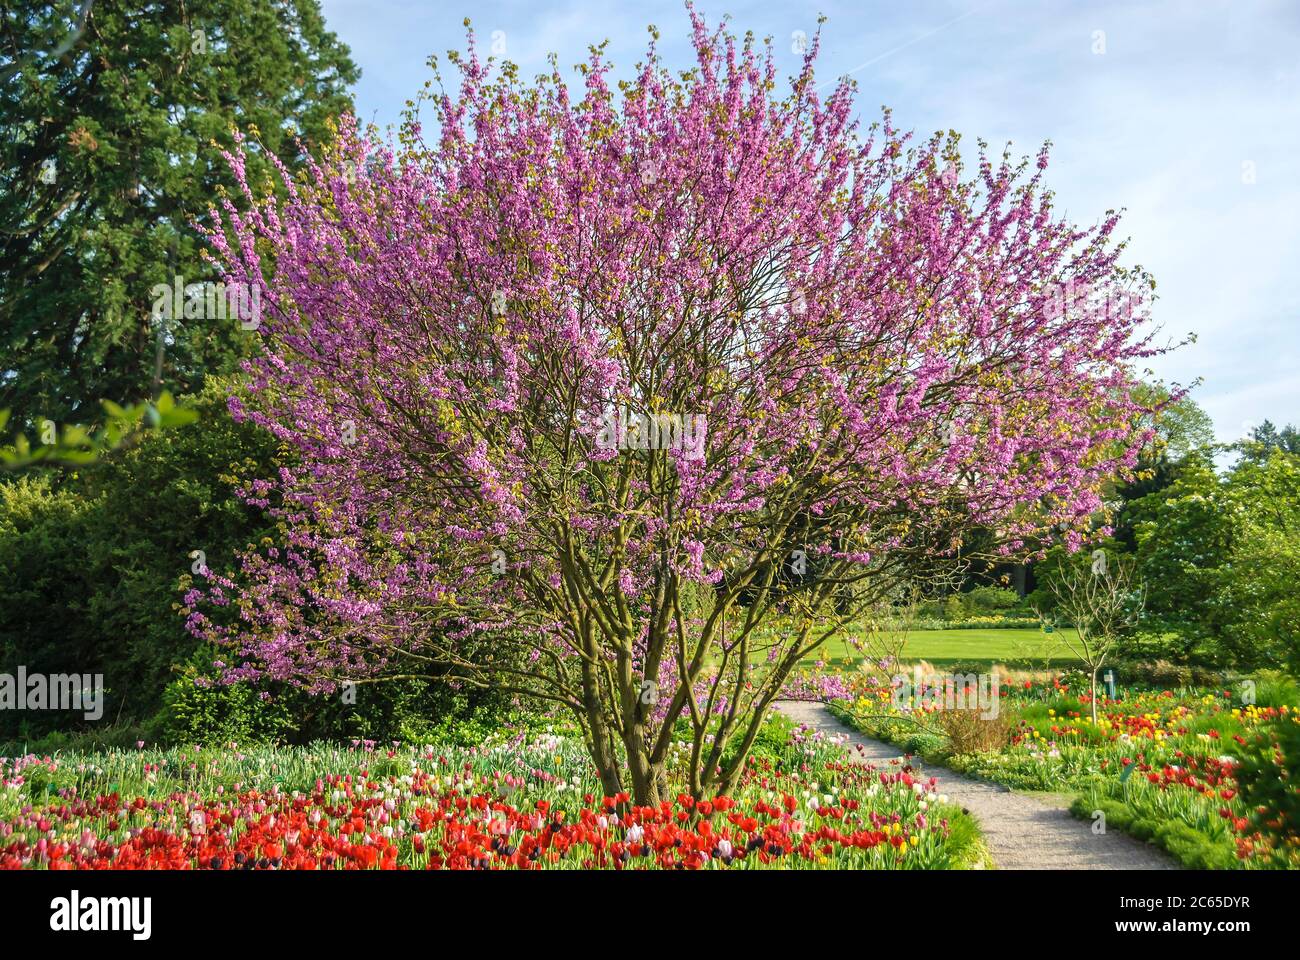 Gewoehnlicher Judasbaum Cercis siliquastrum, Tulpe Tulipa Stock Photo